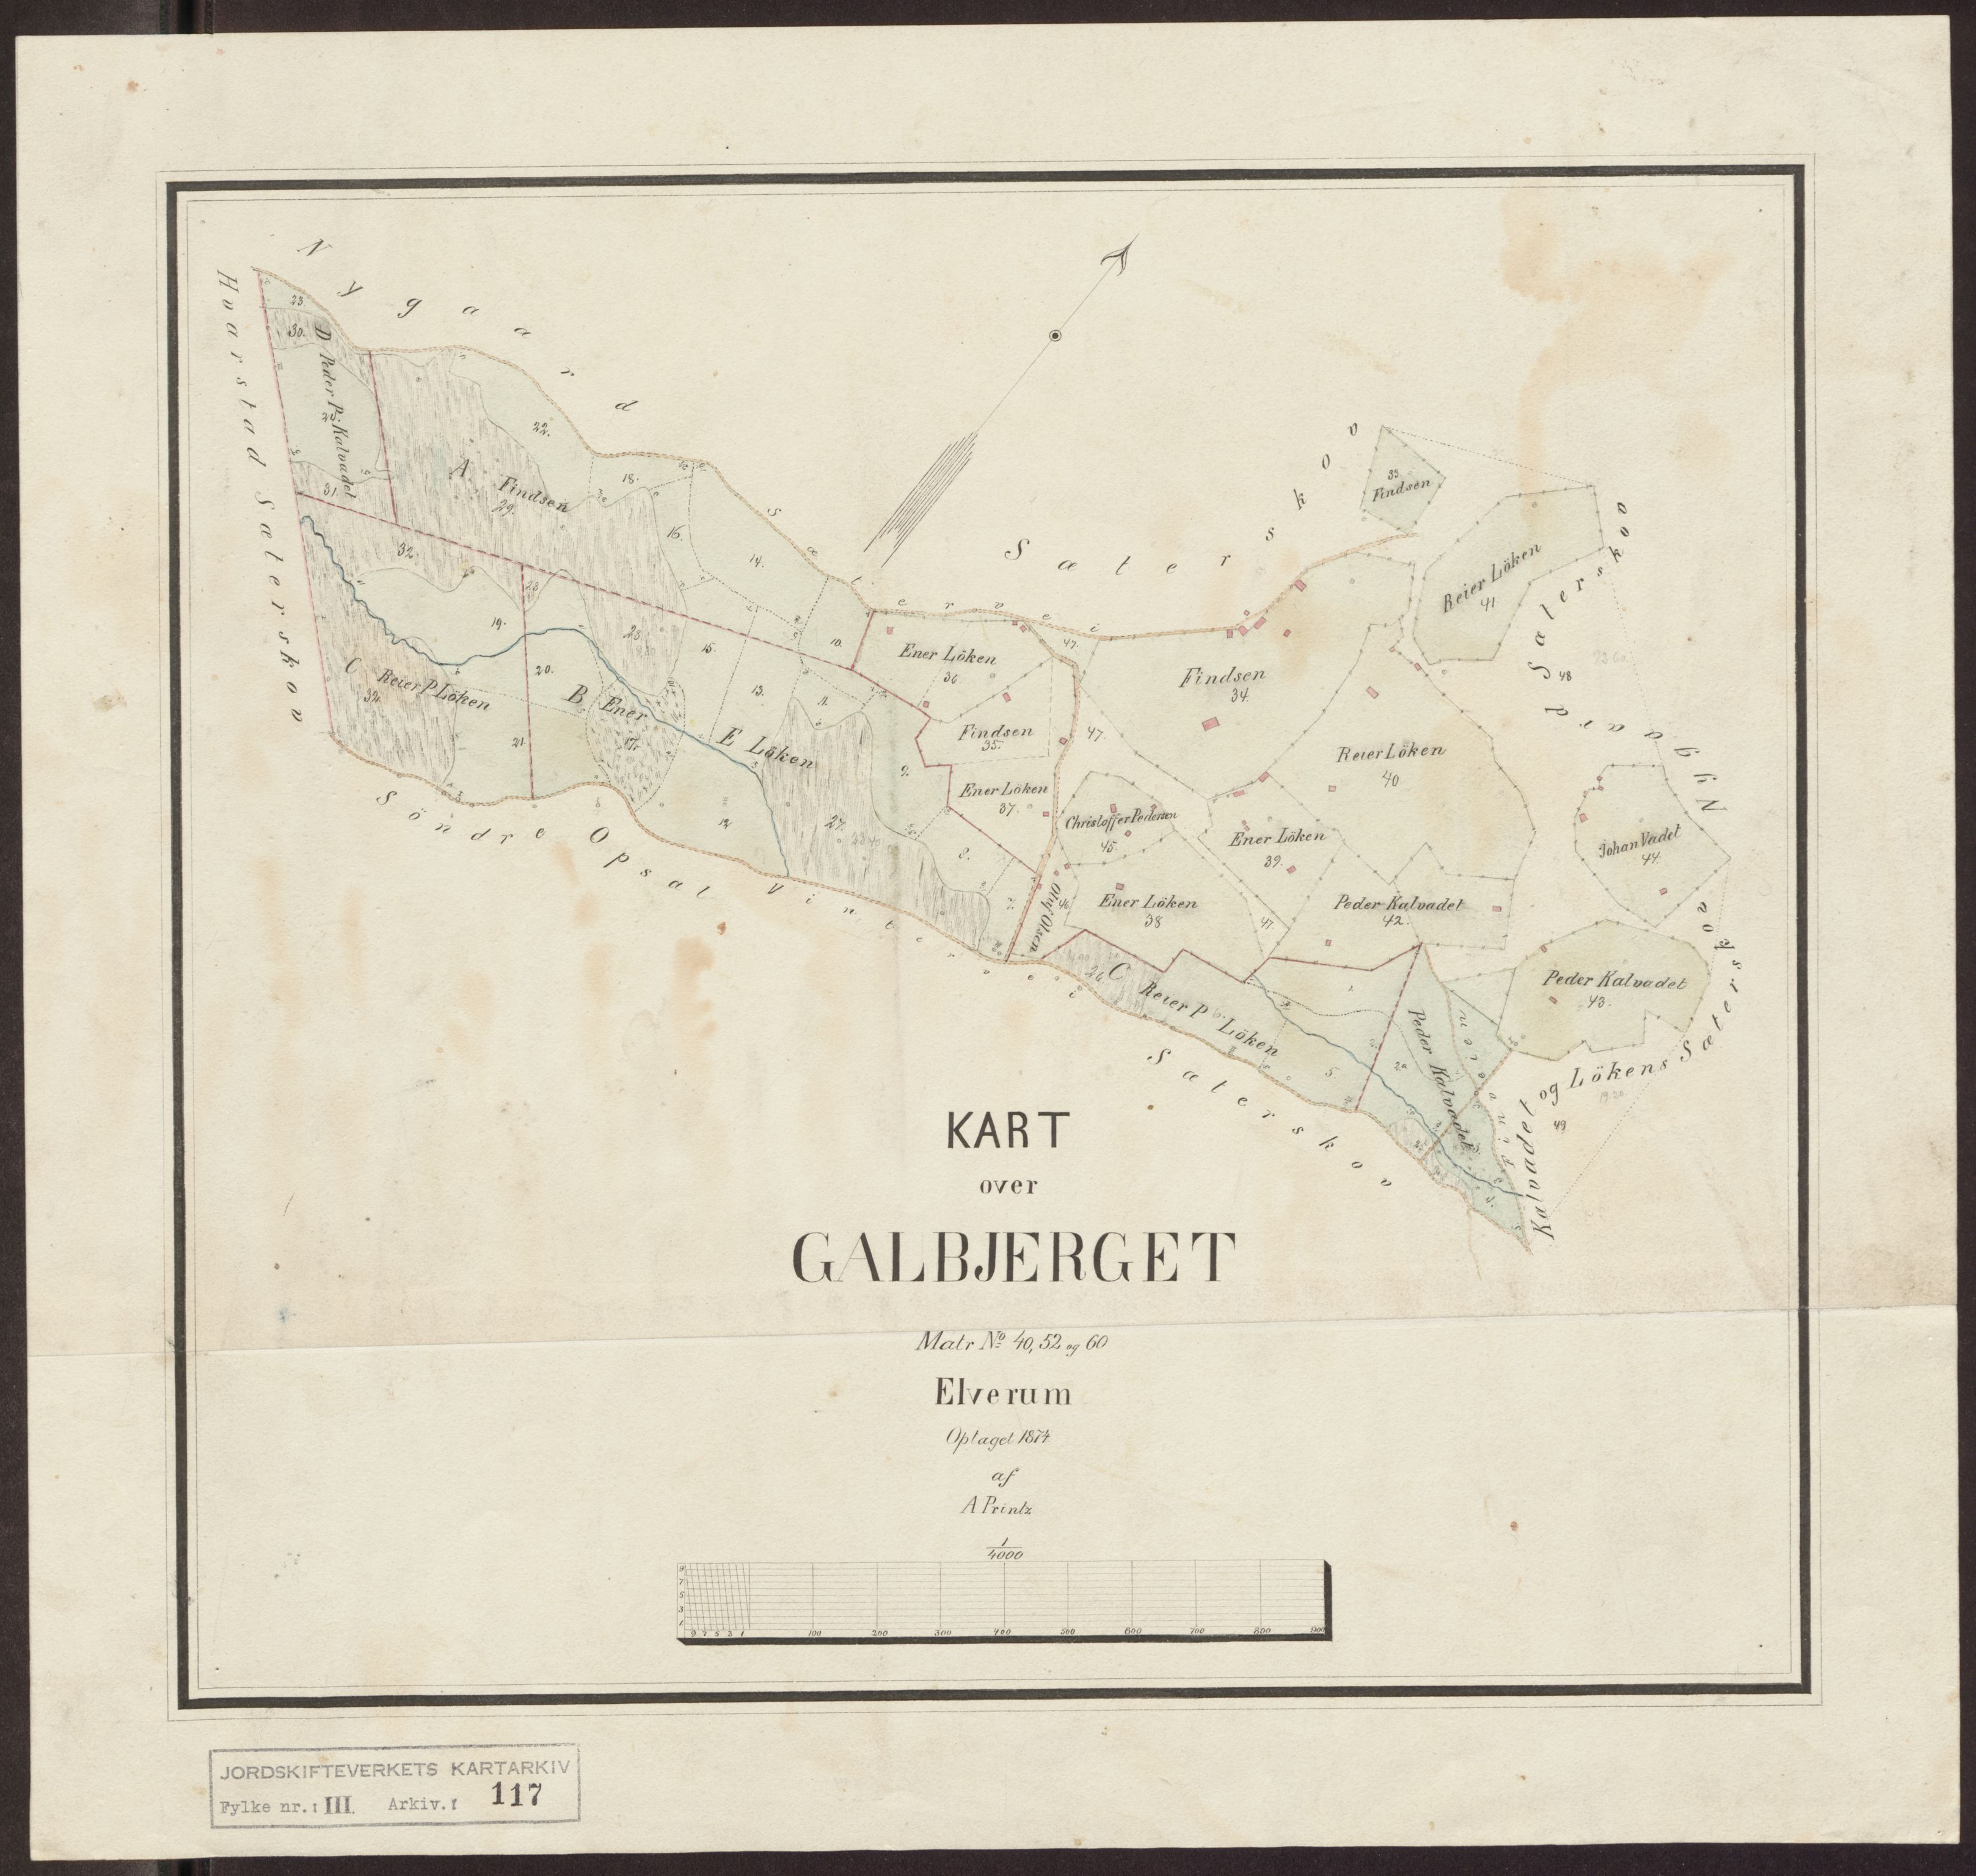 Jordskifteverkets kartarkiv, RA/S-3929/T, 1859-1988, s. 158